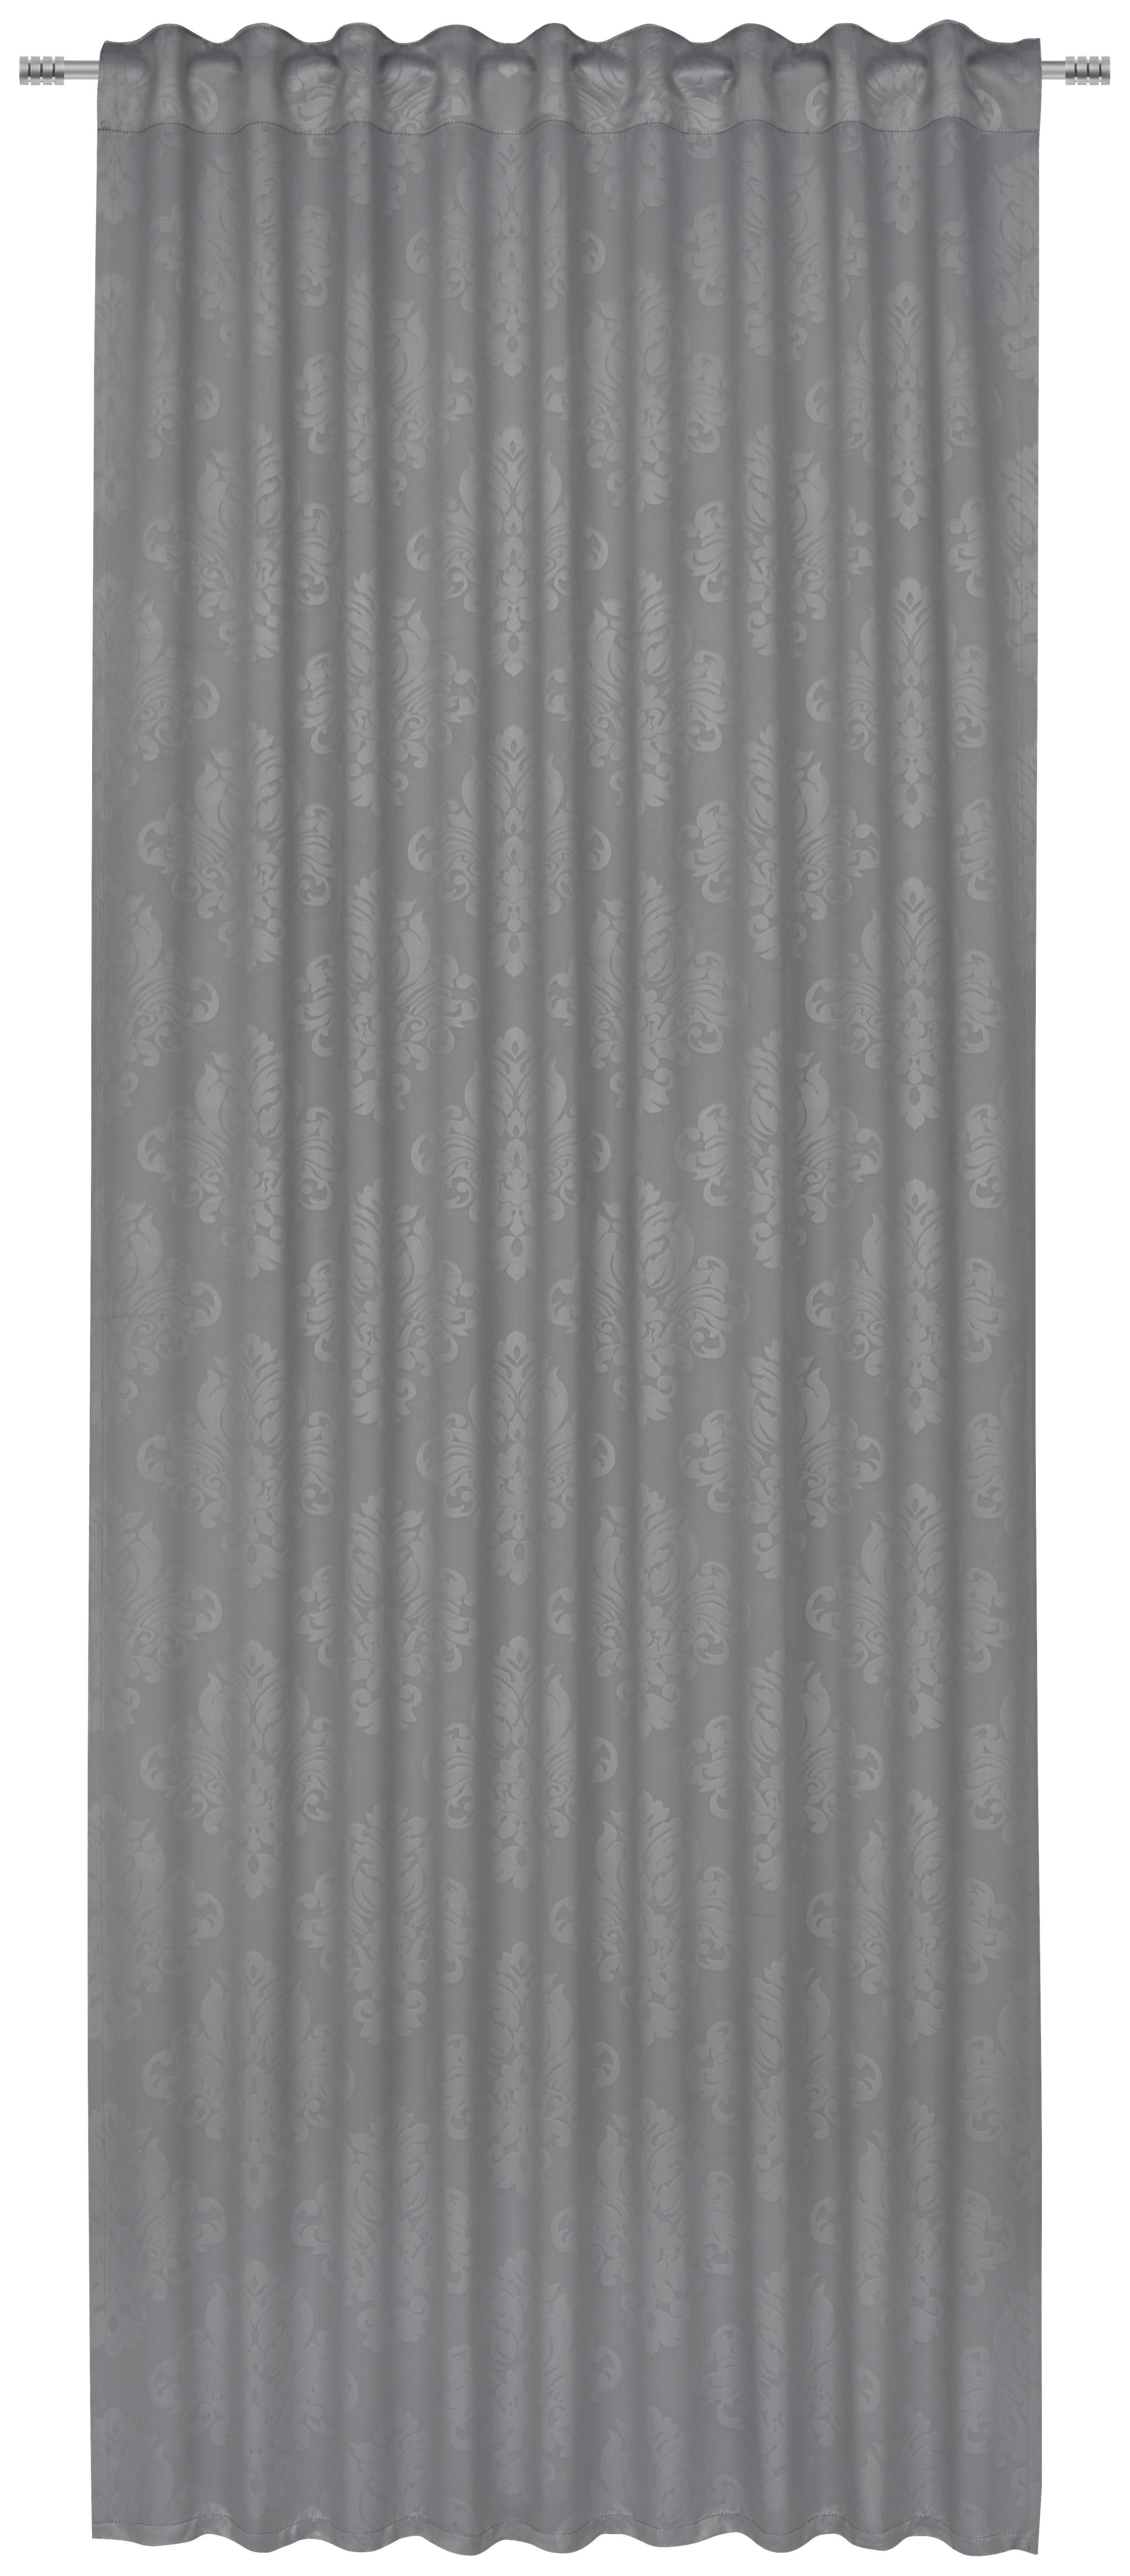 Boxxx HOTOVÝ ZÁVĚS, black-out (nepropouští světlo), 135/245 cm - šedá